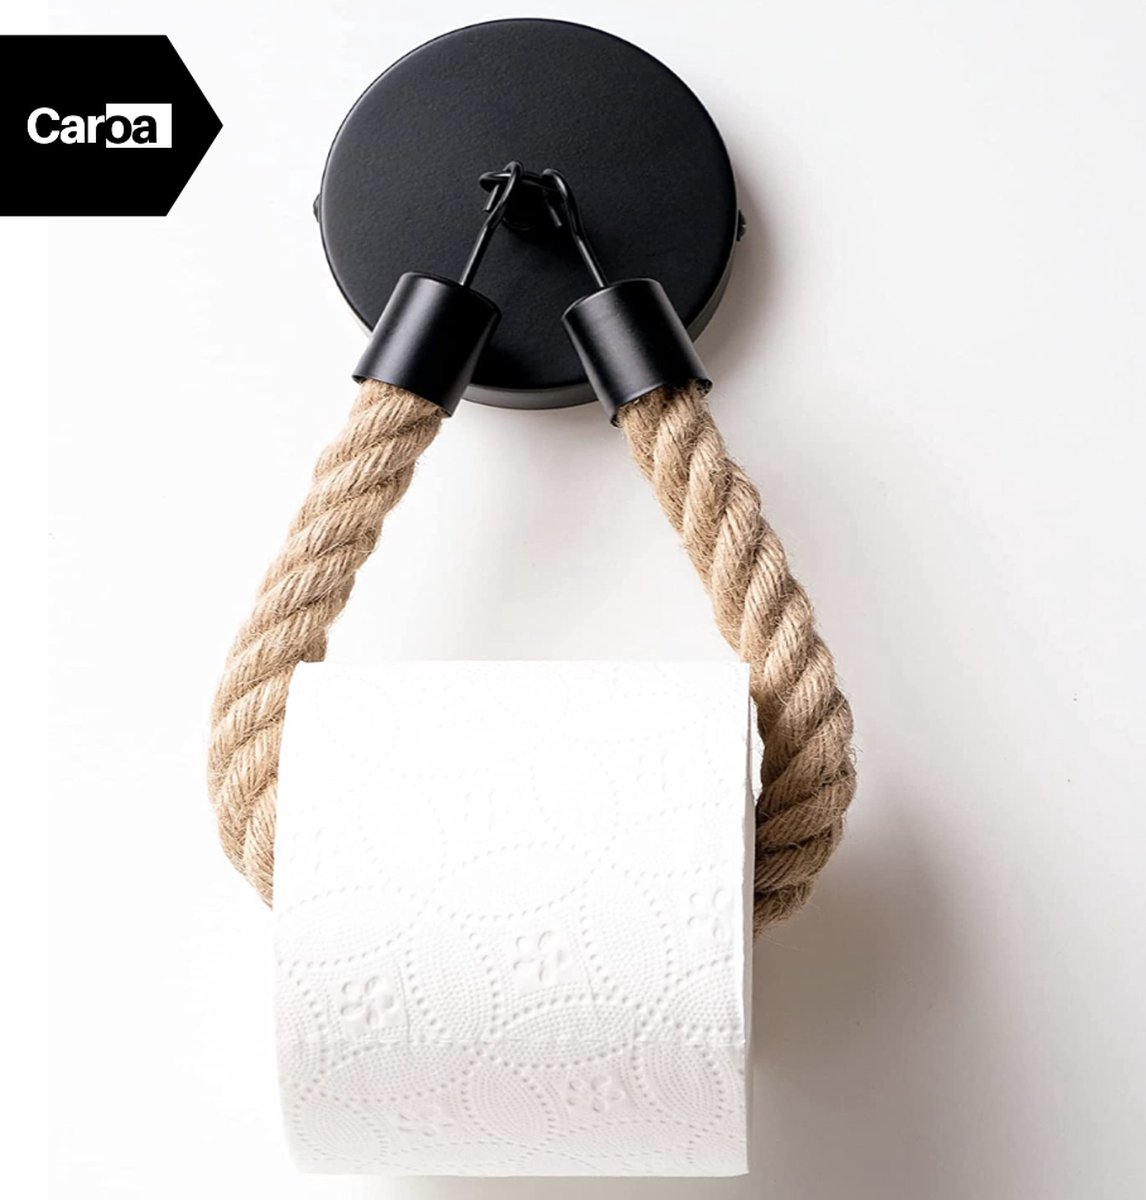 Caroa - wc rolhouder - wc rolhouder zwart - toiletpapierhouder - wc borstel met houder - wc rolhouder zonder boren